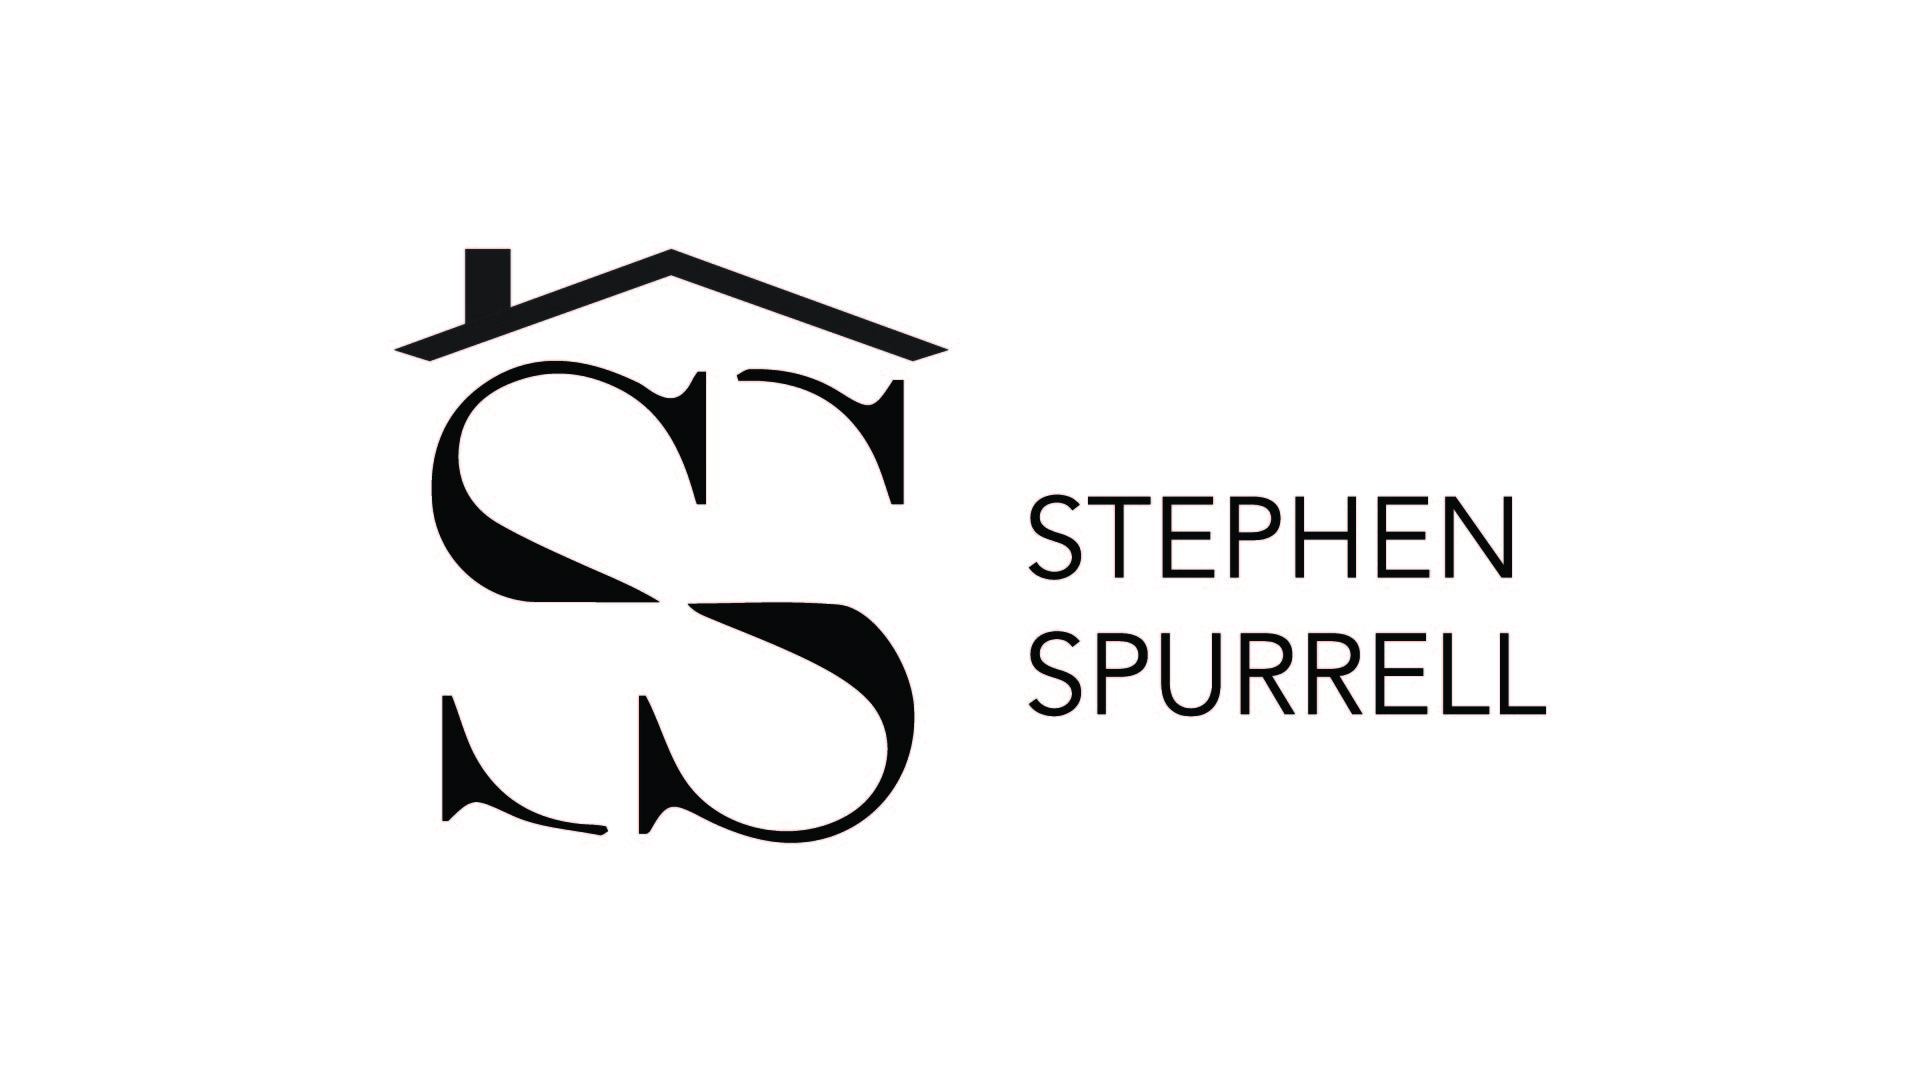 A text banner describing Stephen